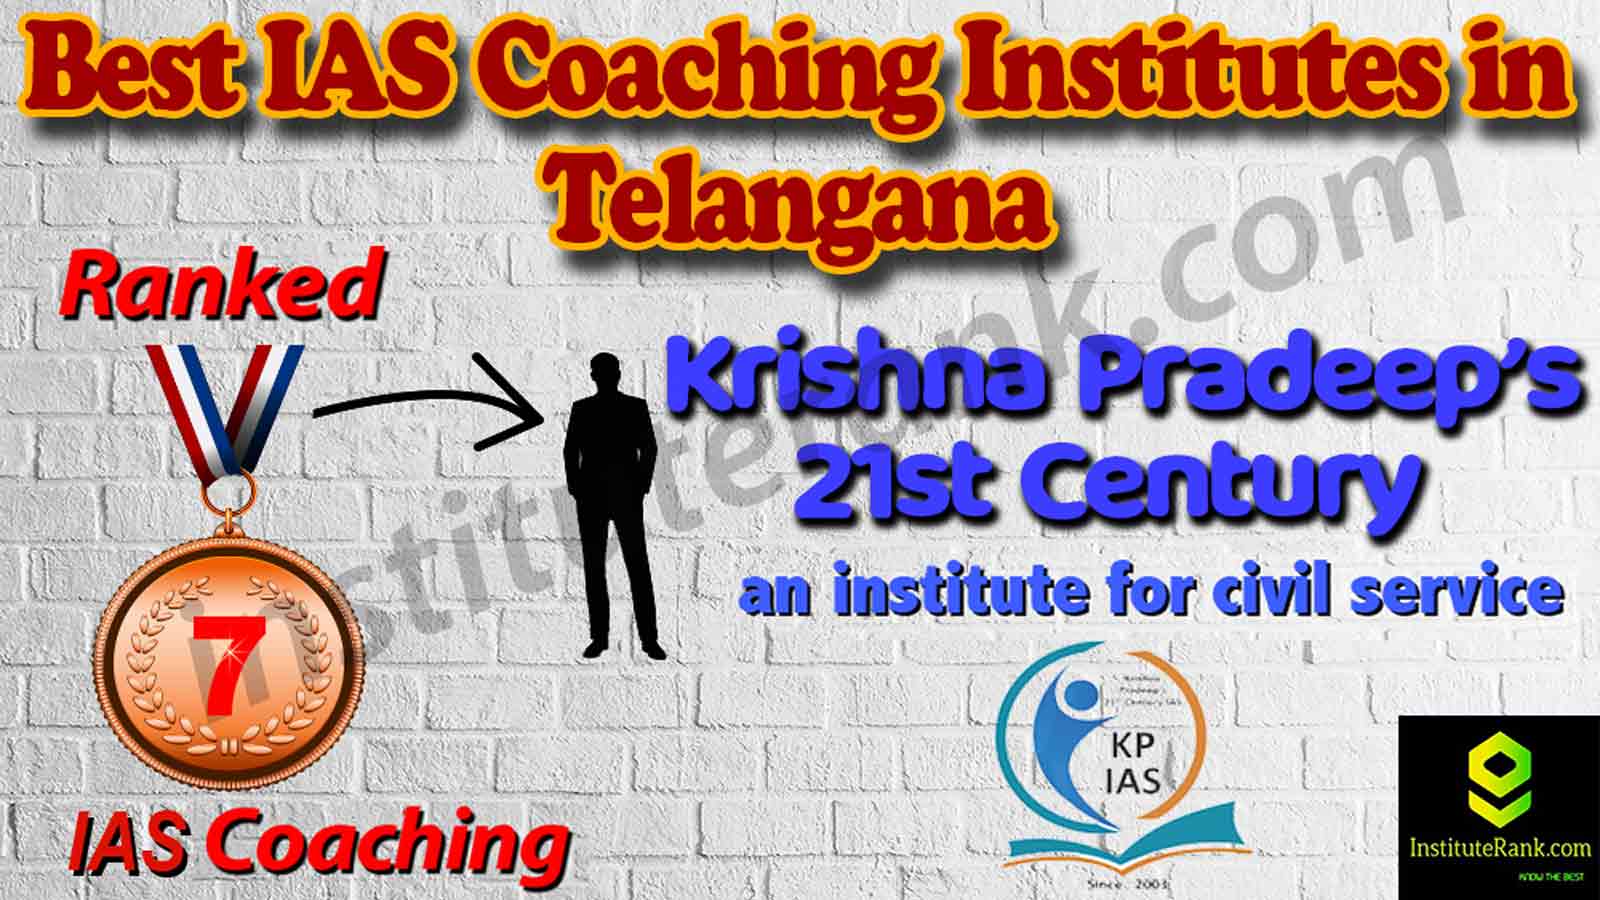 Best IAS Coaching Institutes in Telangana